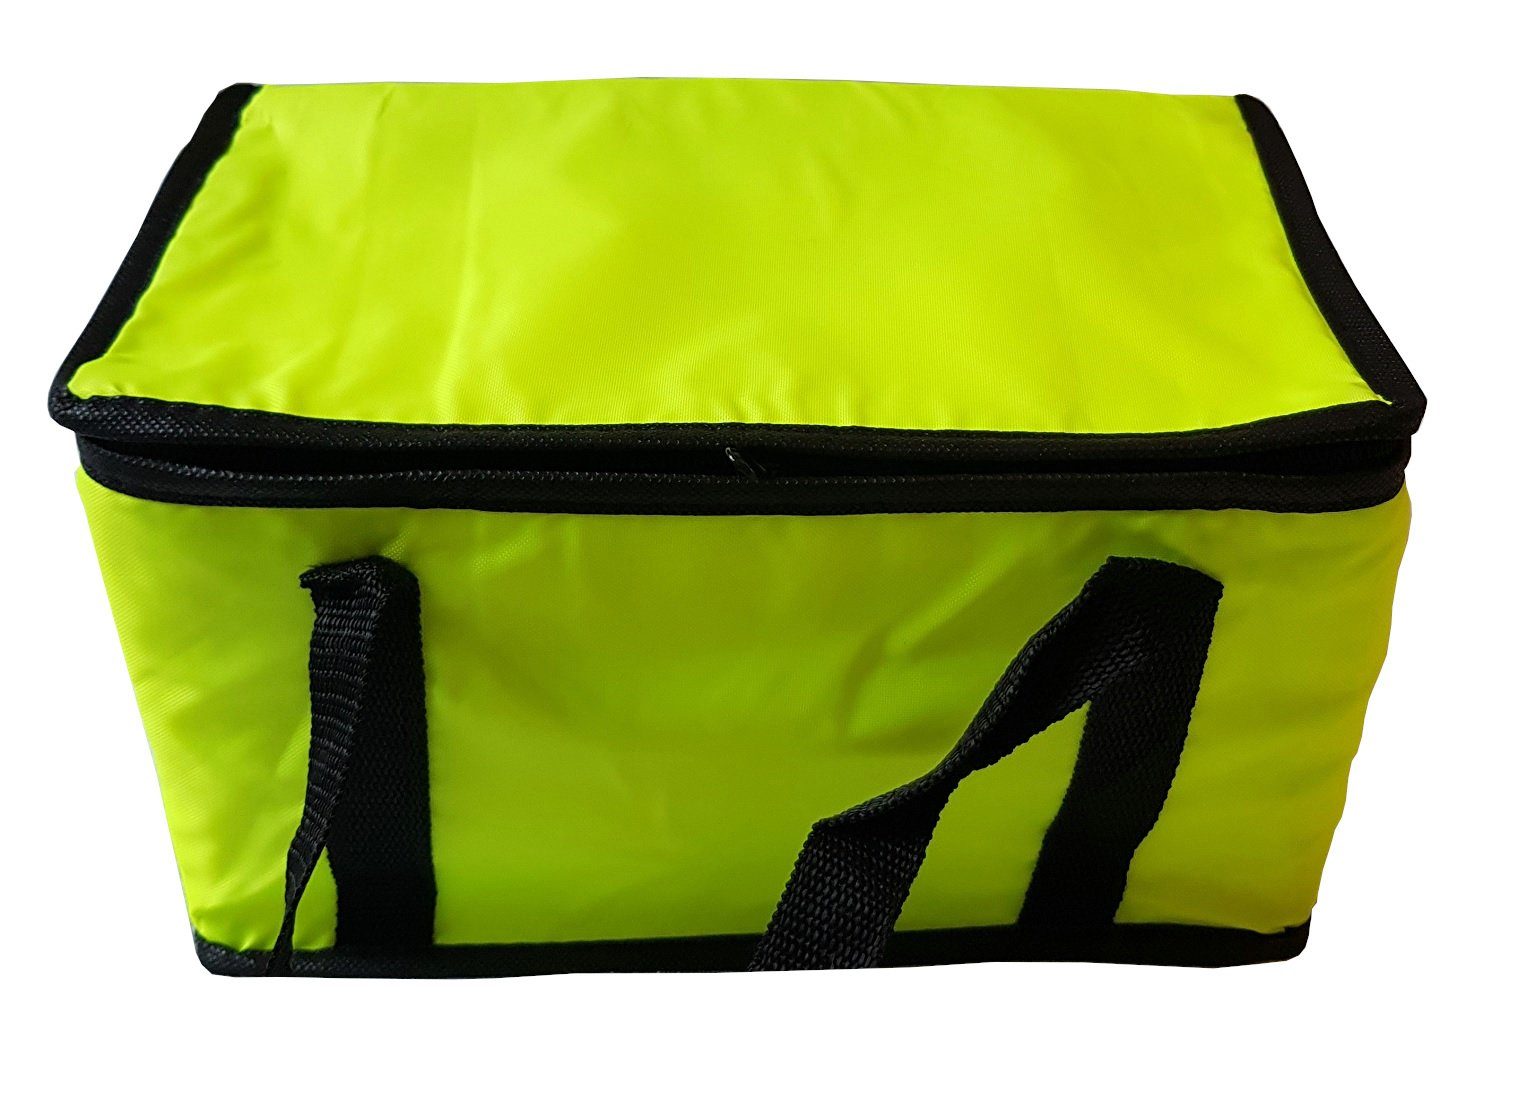 Provance Kühltasche Kühltasche Einkaufstasche Isoliertasche Kühlbox 9,5L Picknicktasche Gelb